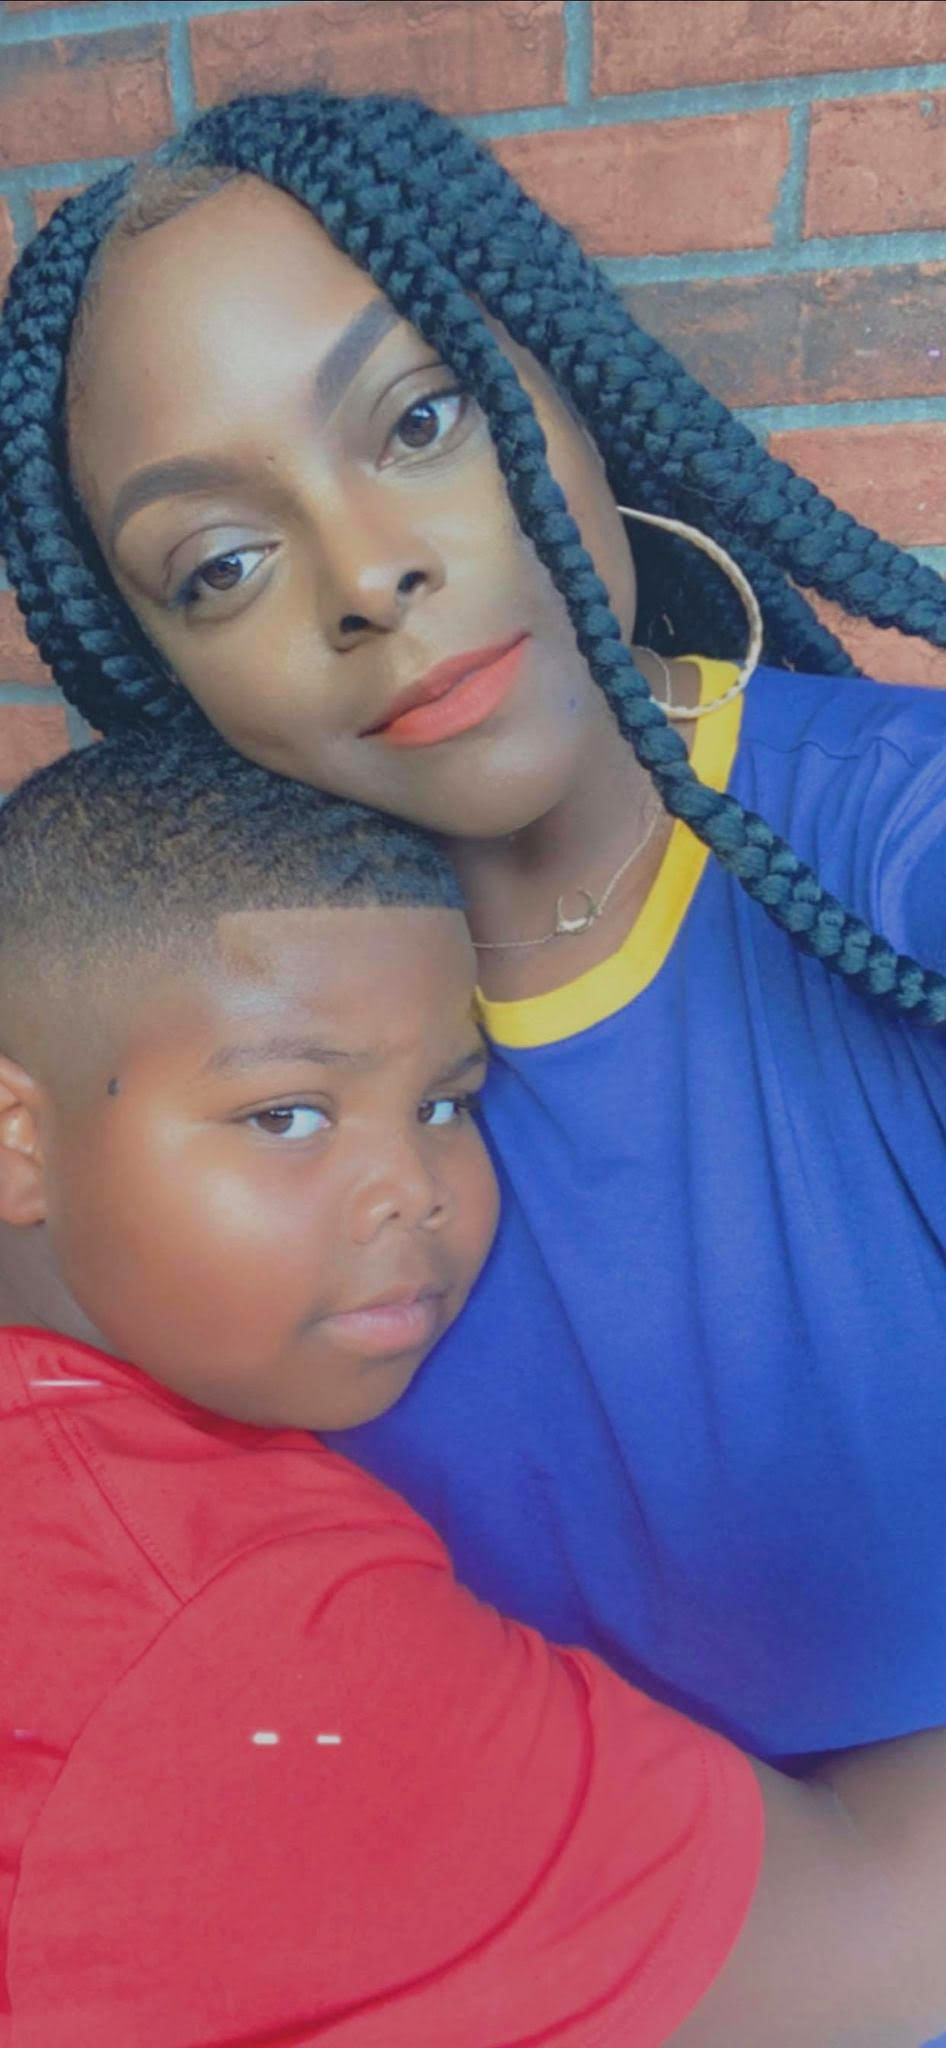 Selfie de Carnesia con su hijo frente a una pared de ladrillos. Lleva una camisa azul y tiene trenzas. Ella está apoyando la cabeza en su hijo, que tiene sus brazos alrededor de su cintura y su cabeza sobre su hombro. Lleva una camisa roja.